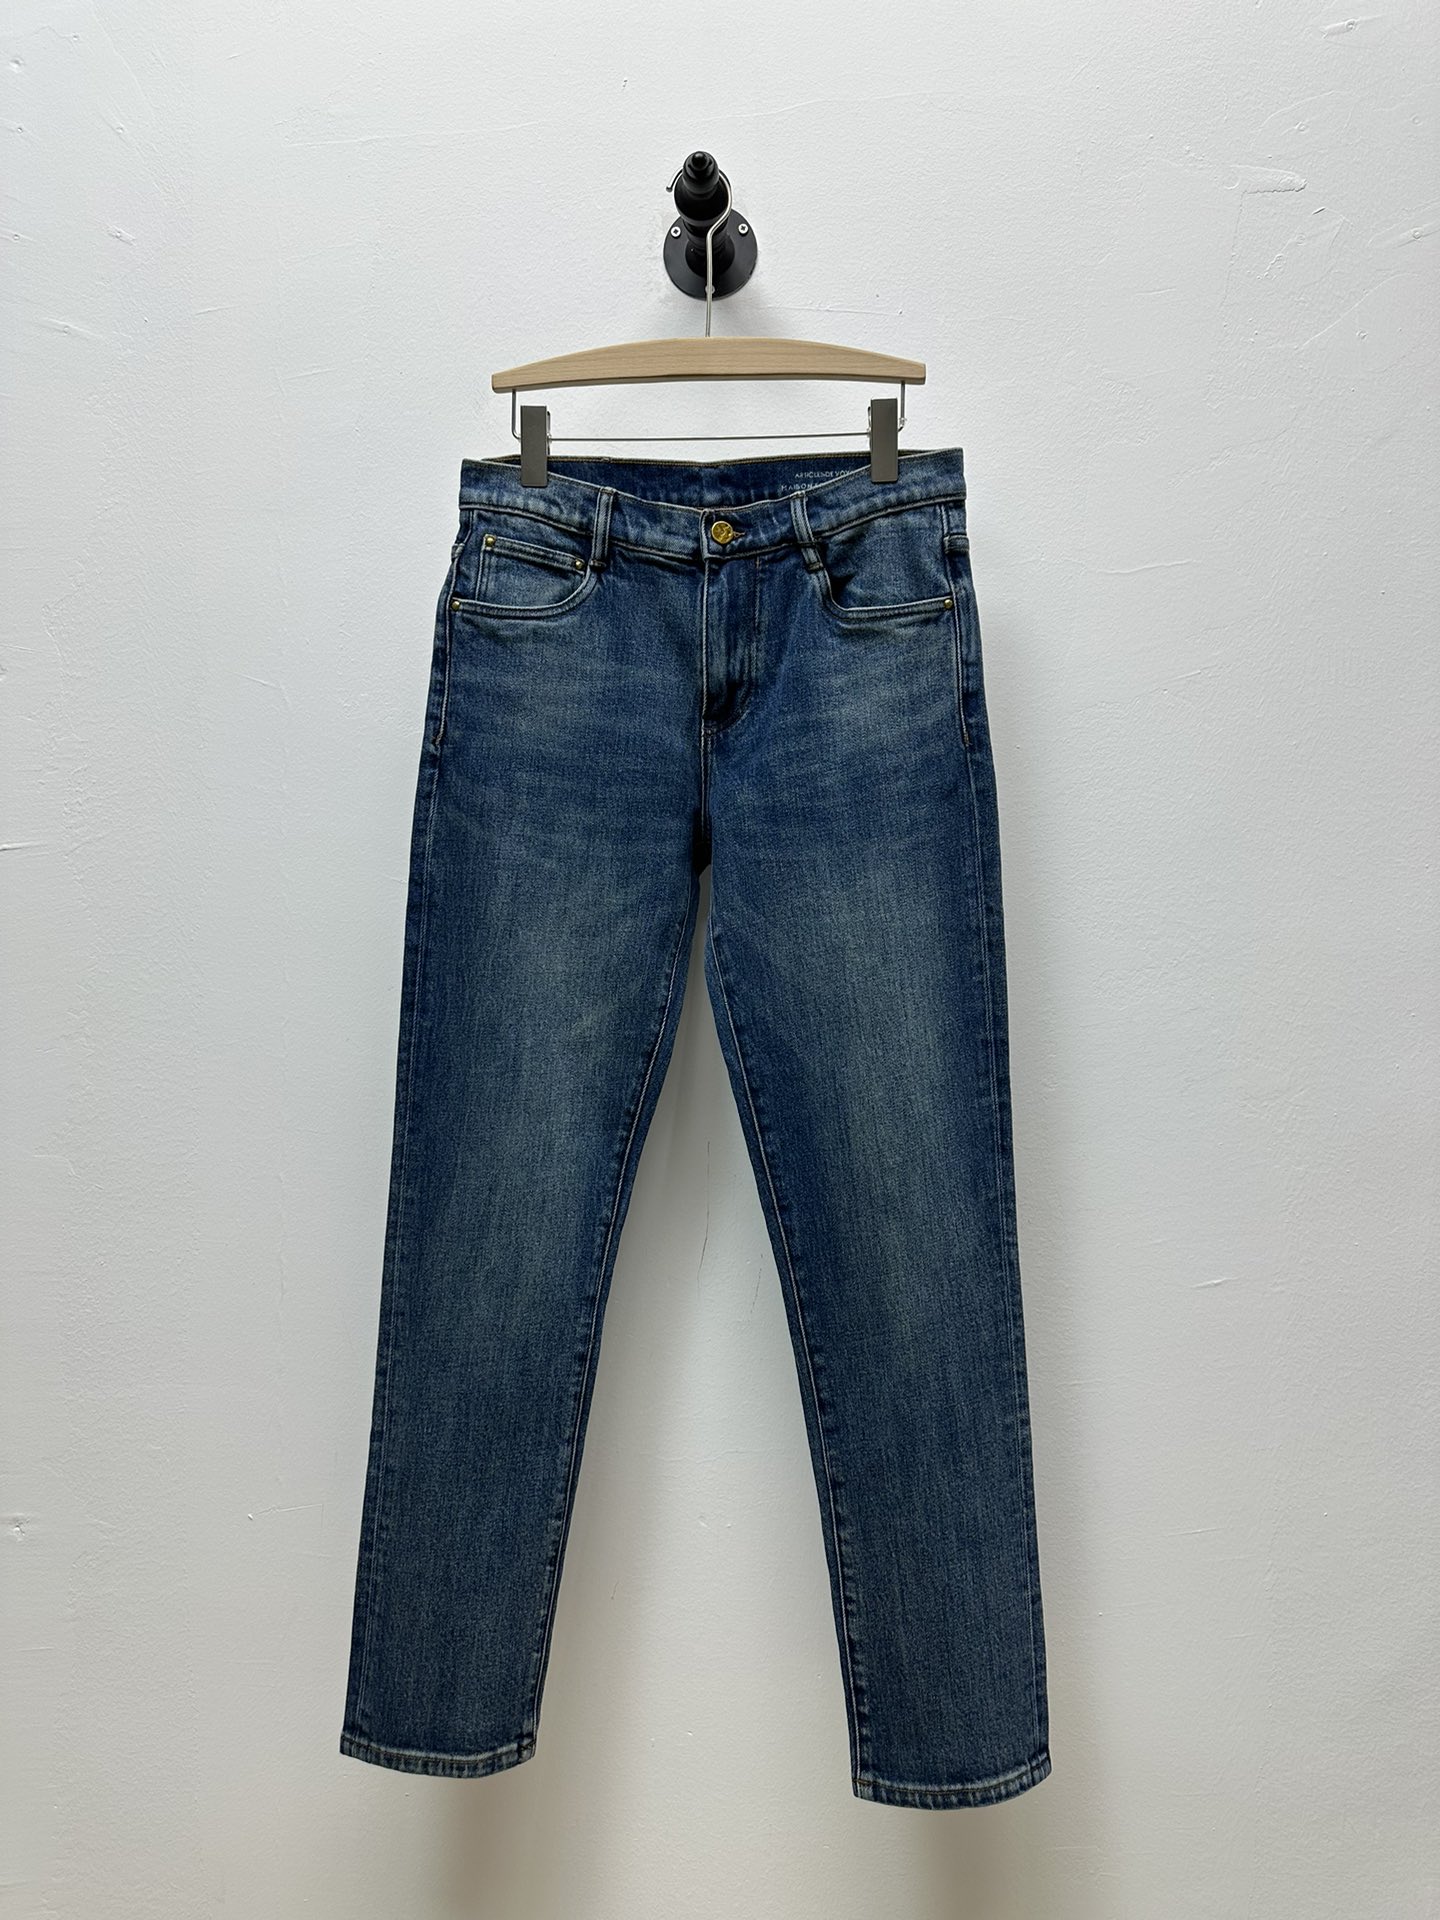 Louis Vuitton Clothing Jeans Blue Denim Spring Collection Vintage